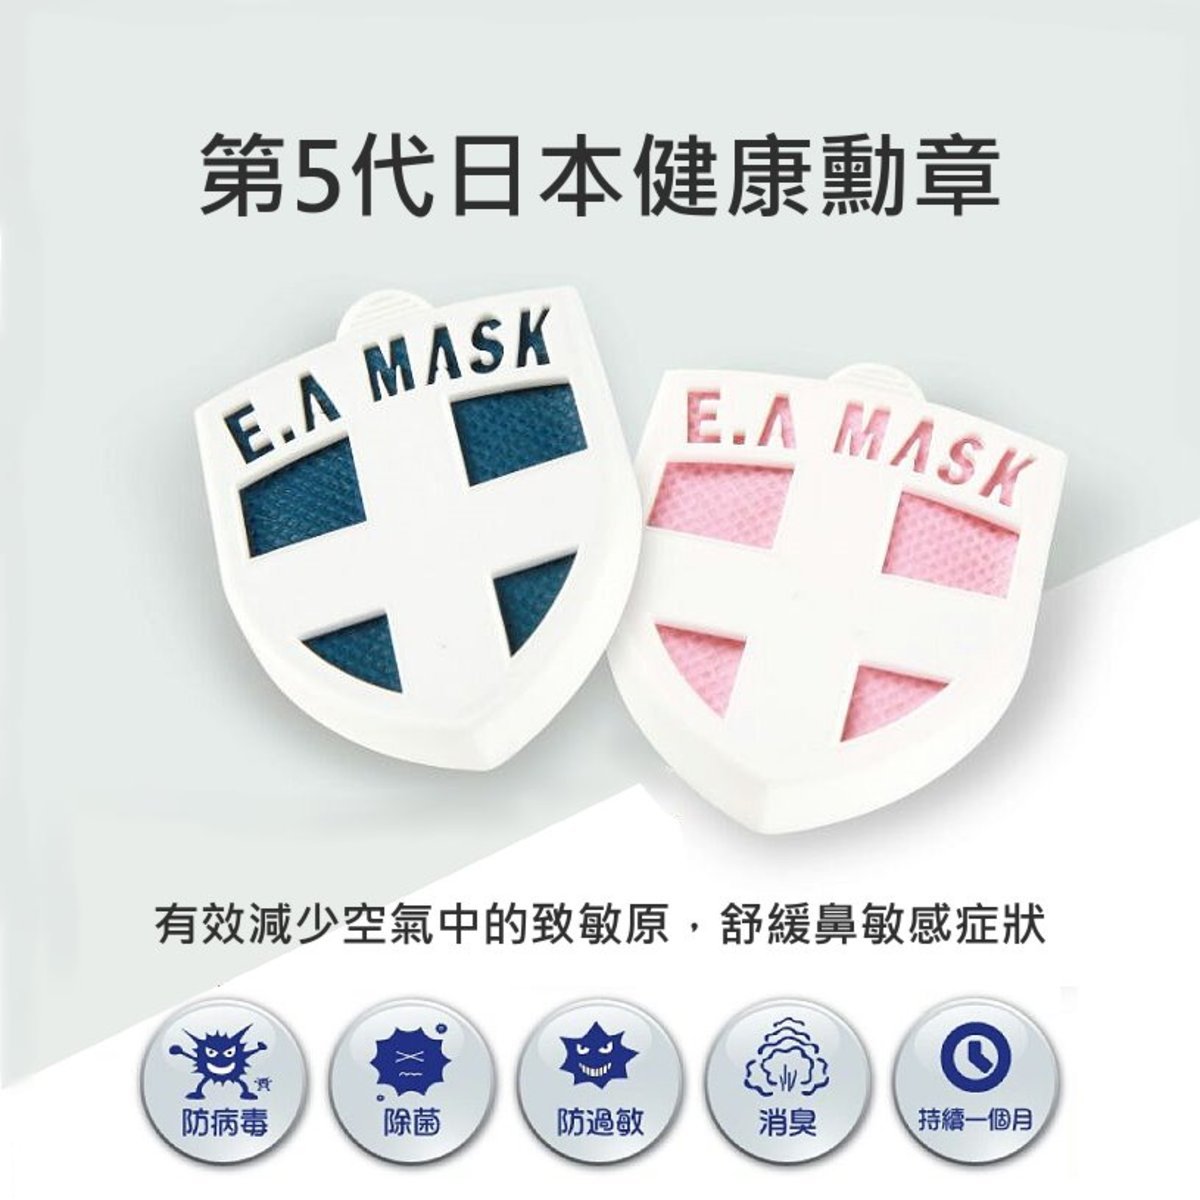 ECOM E.A Mask ES-020 日本健康勳章